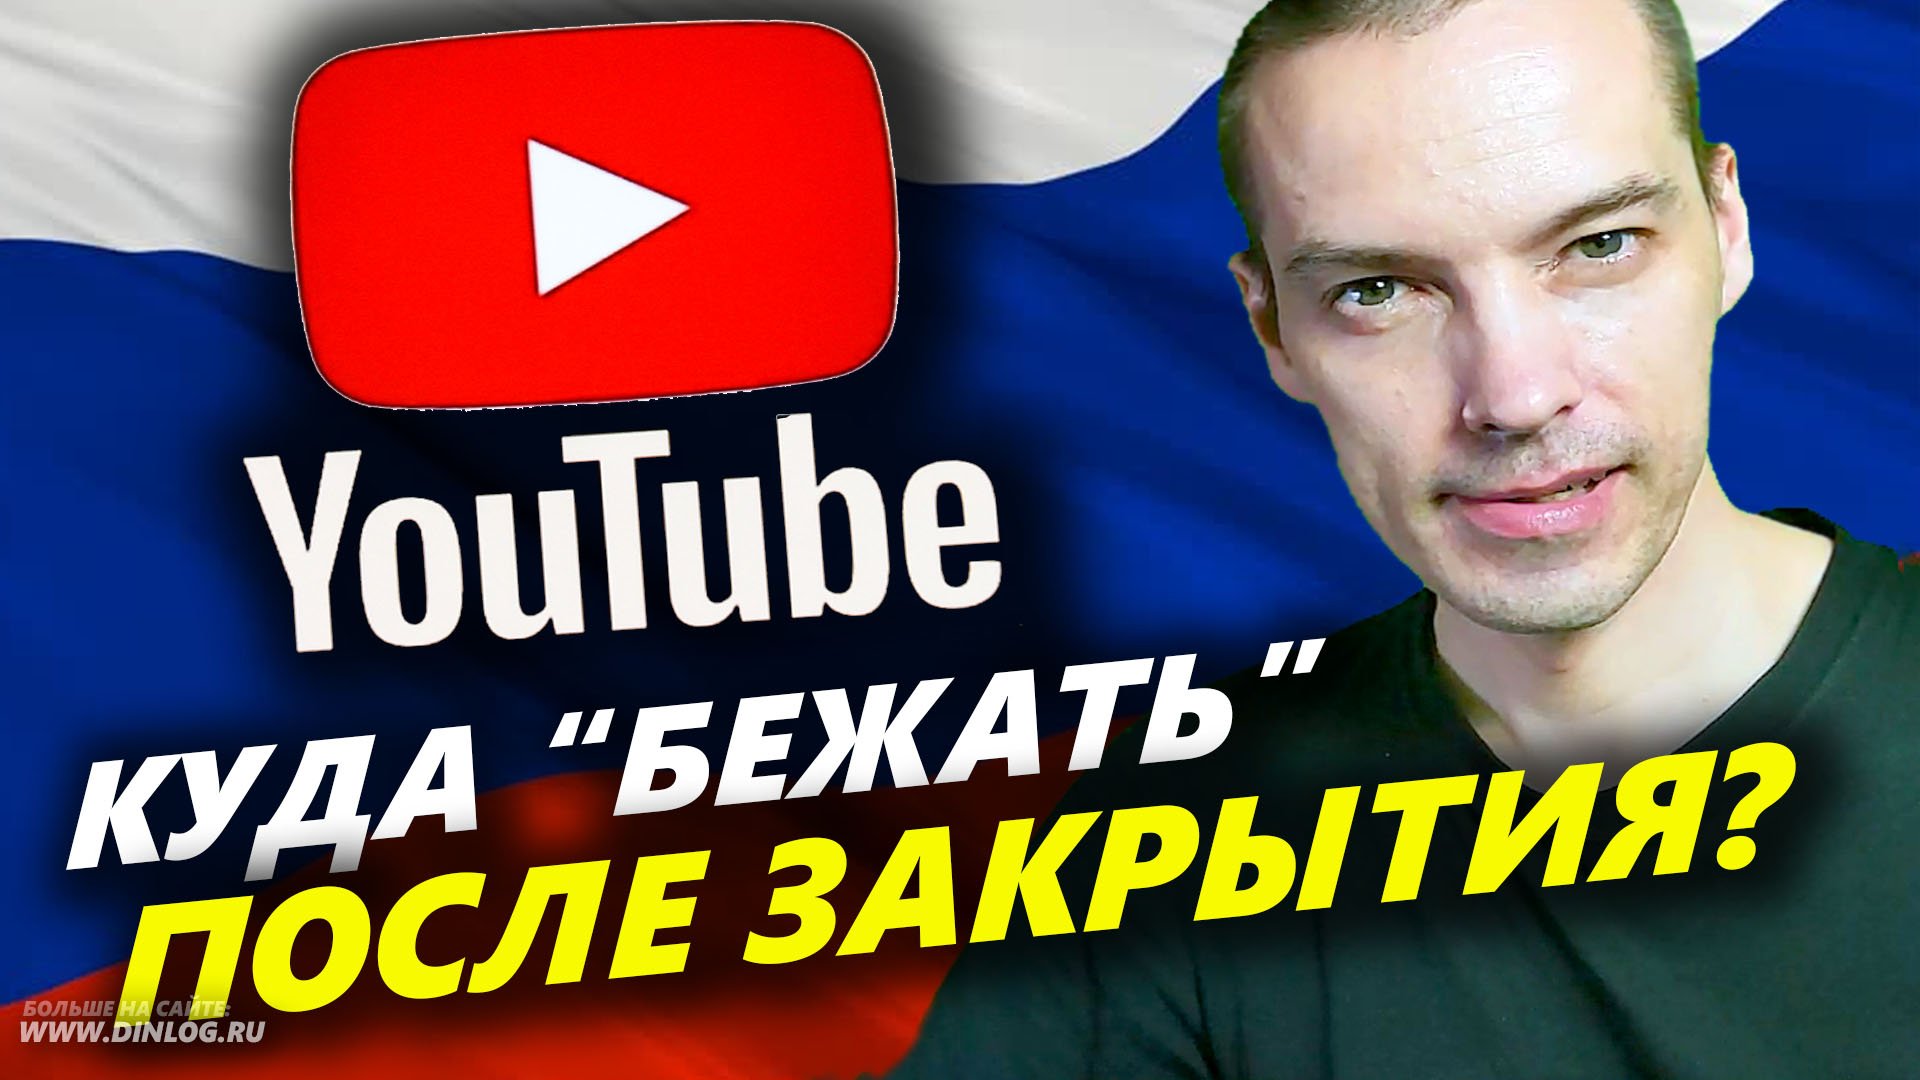 ▶ Уже скоро YouTube могут ЗАКРЫТЬ в РОССИИ! ▶ Куда уходить с видеохостинга авторам и зрителям?